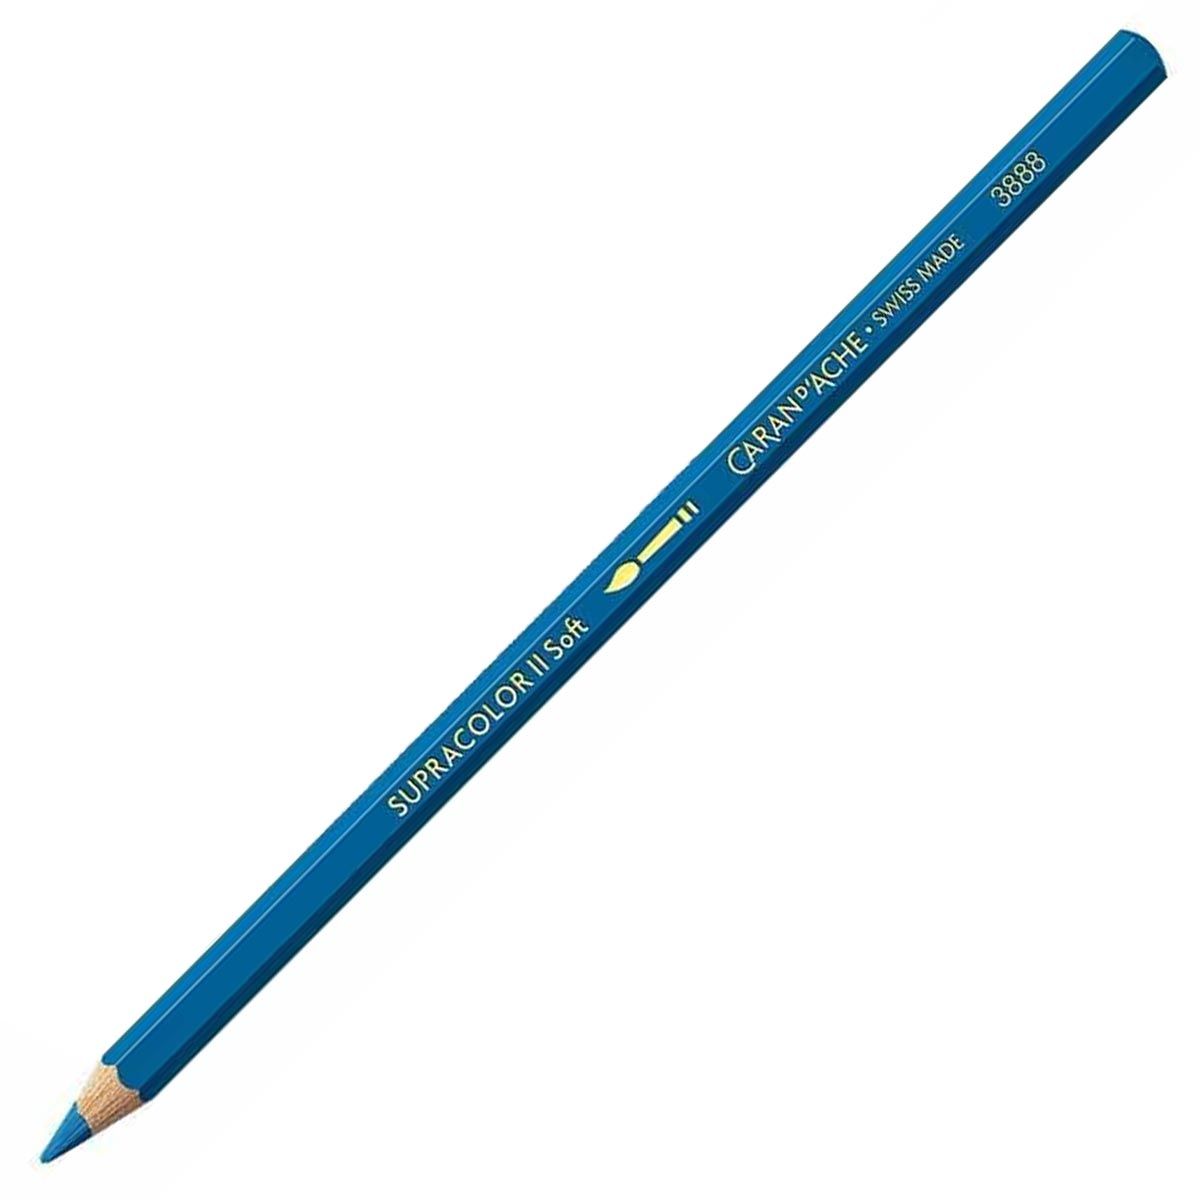 Caran d'Ache Supracolor ll Soft Aquarelle Pencil - Marine Blue 169